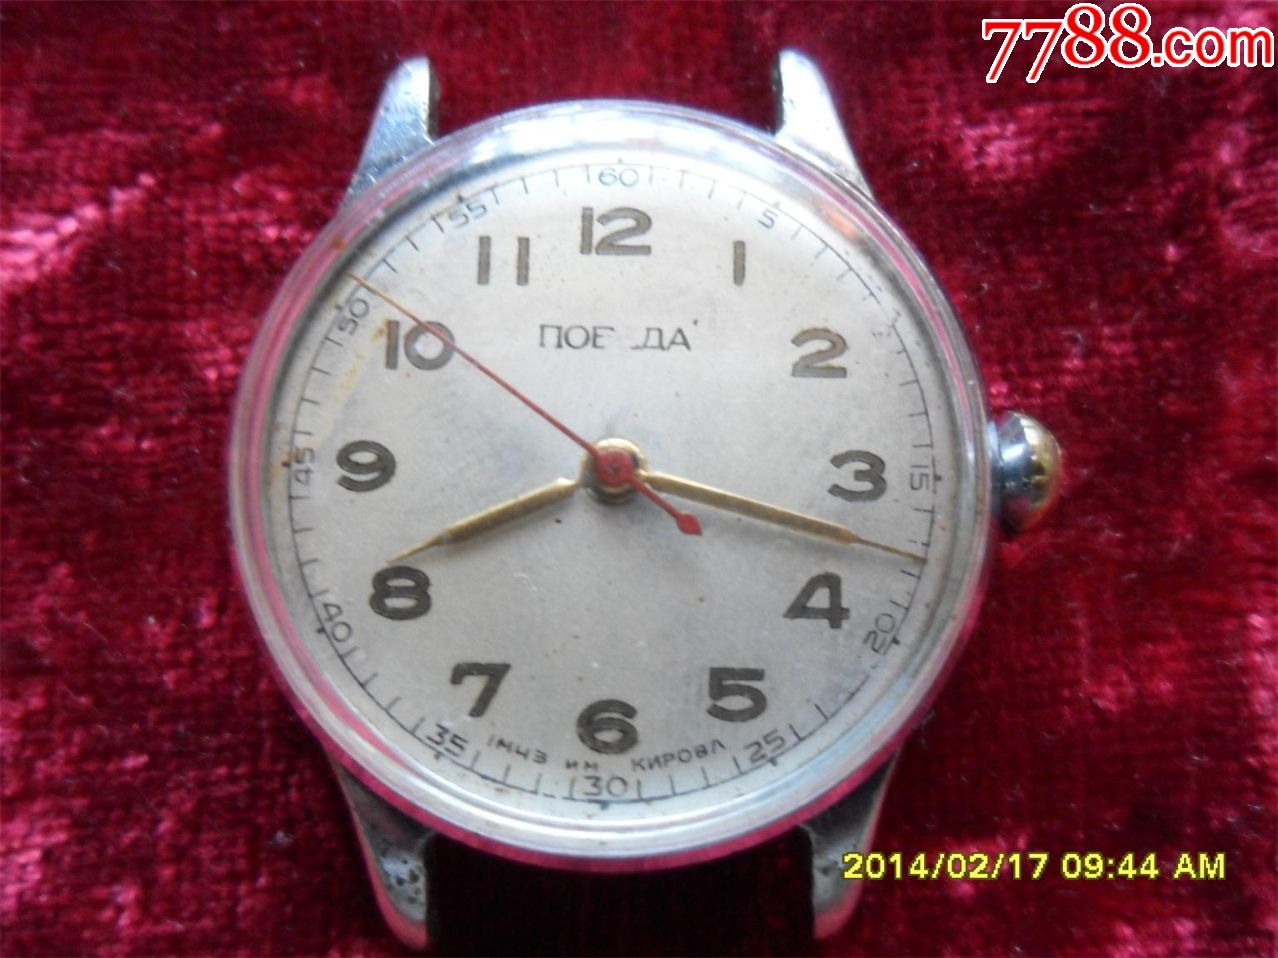 苏联胜利牌手表图片